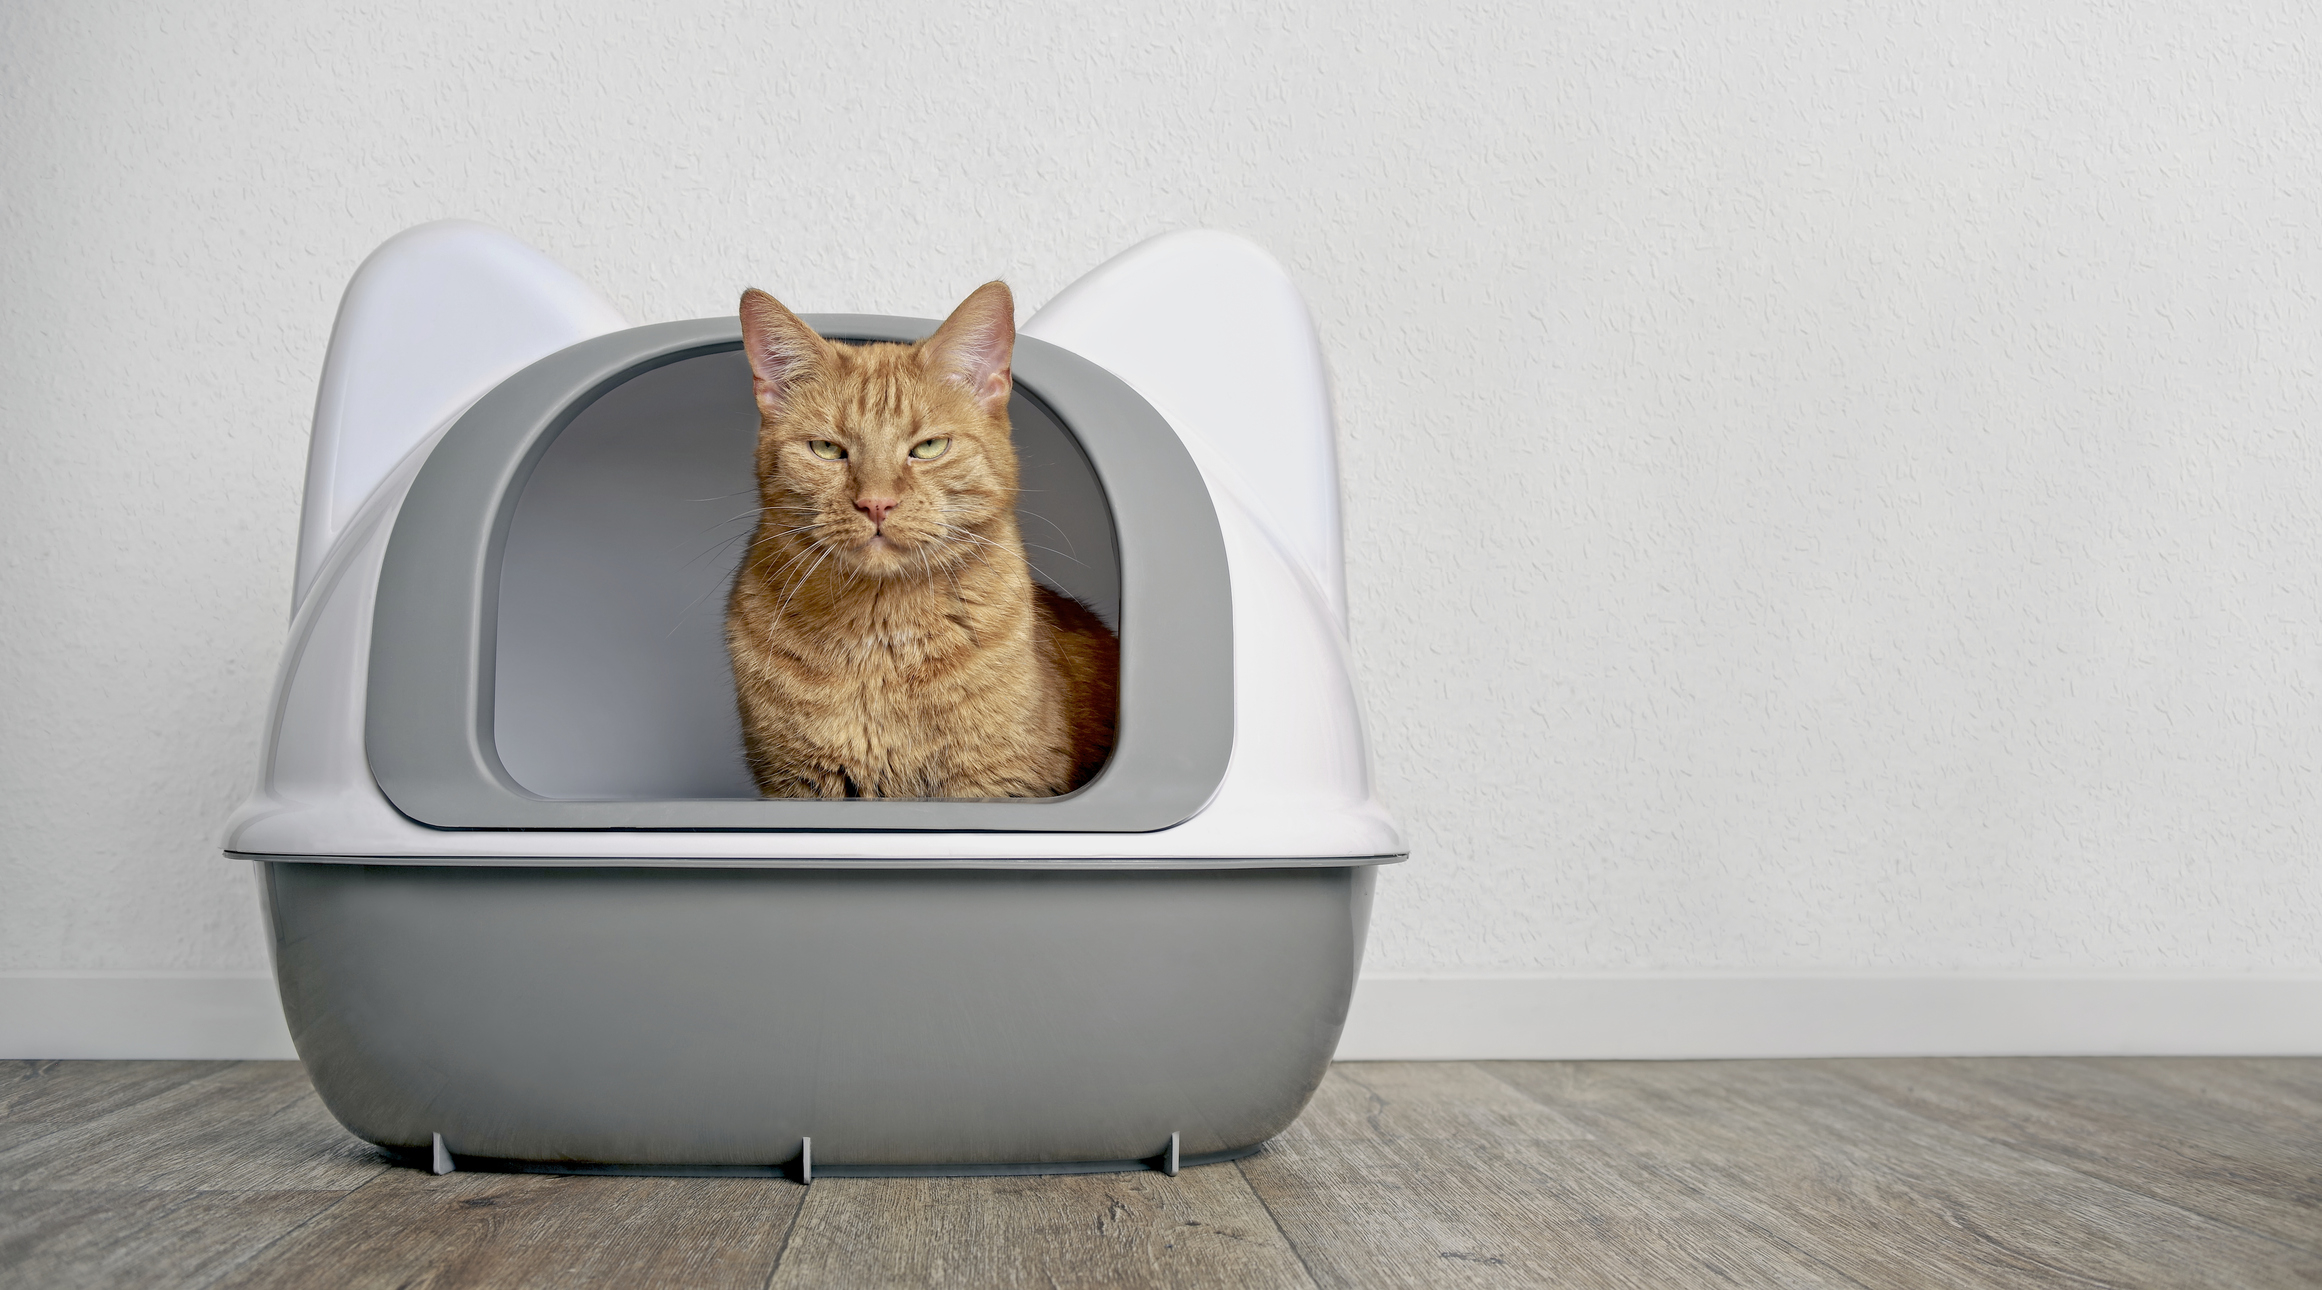 A cat in a litter box